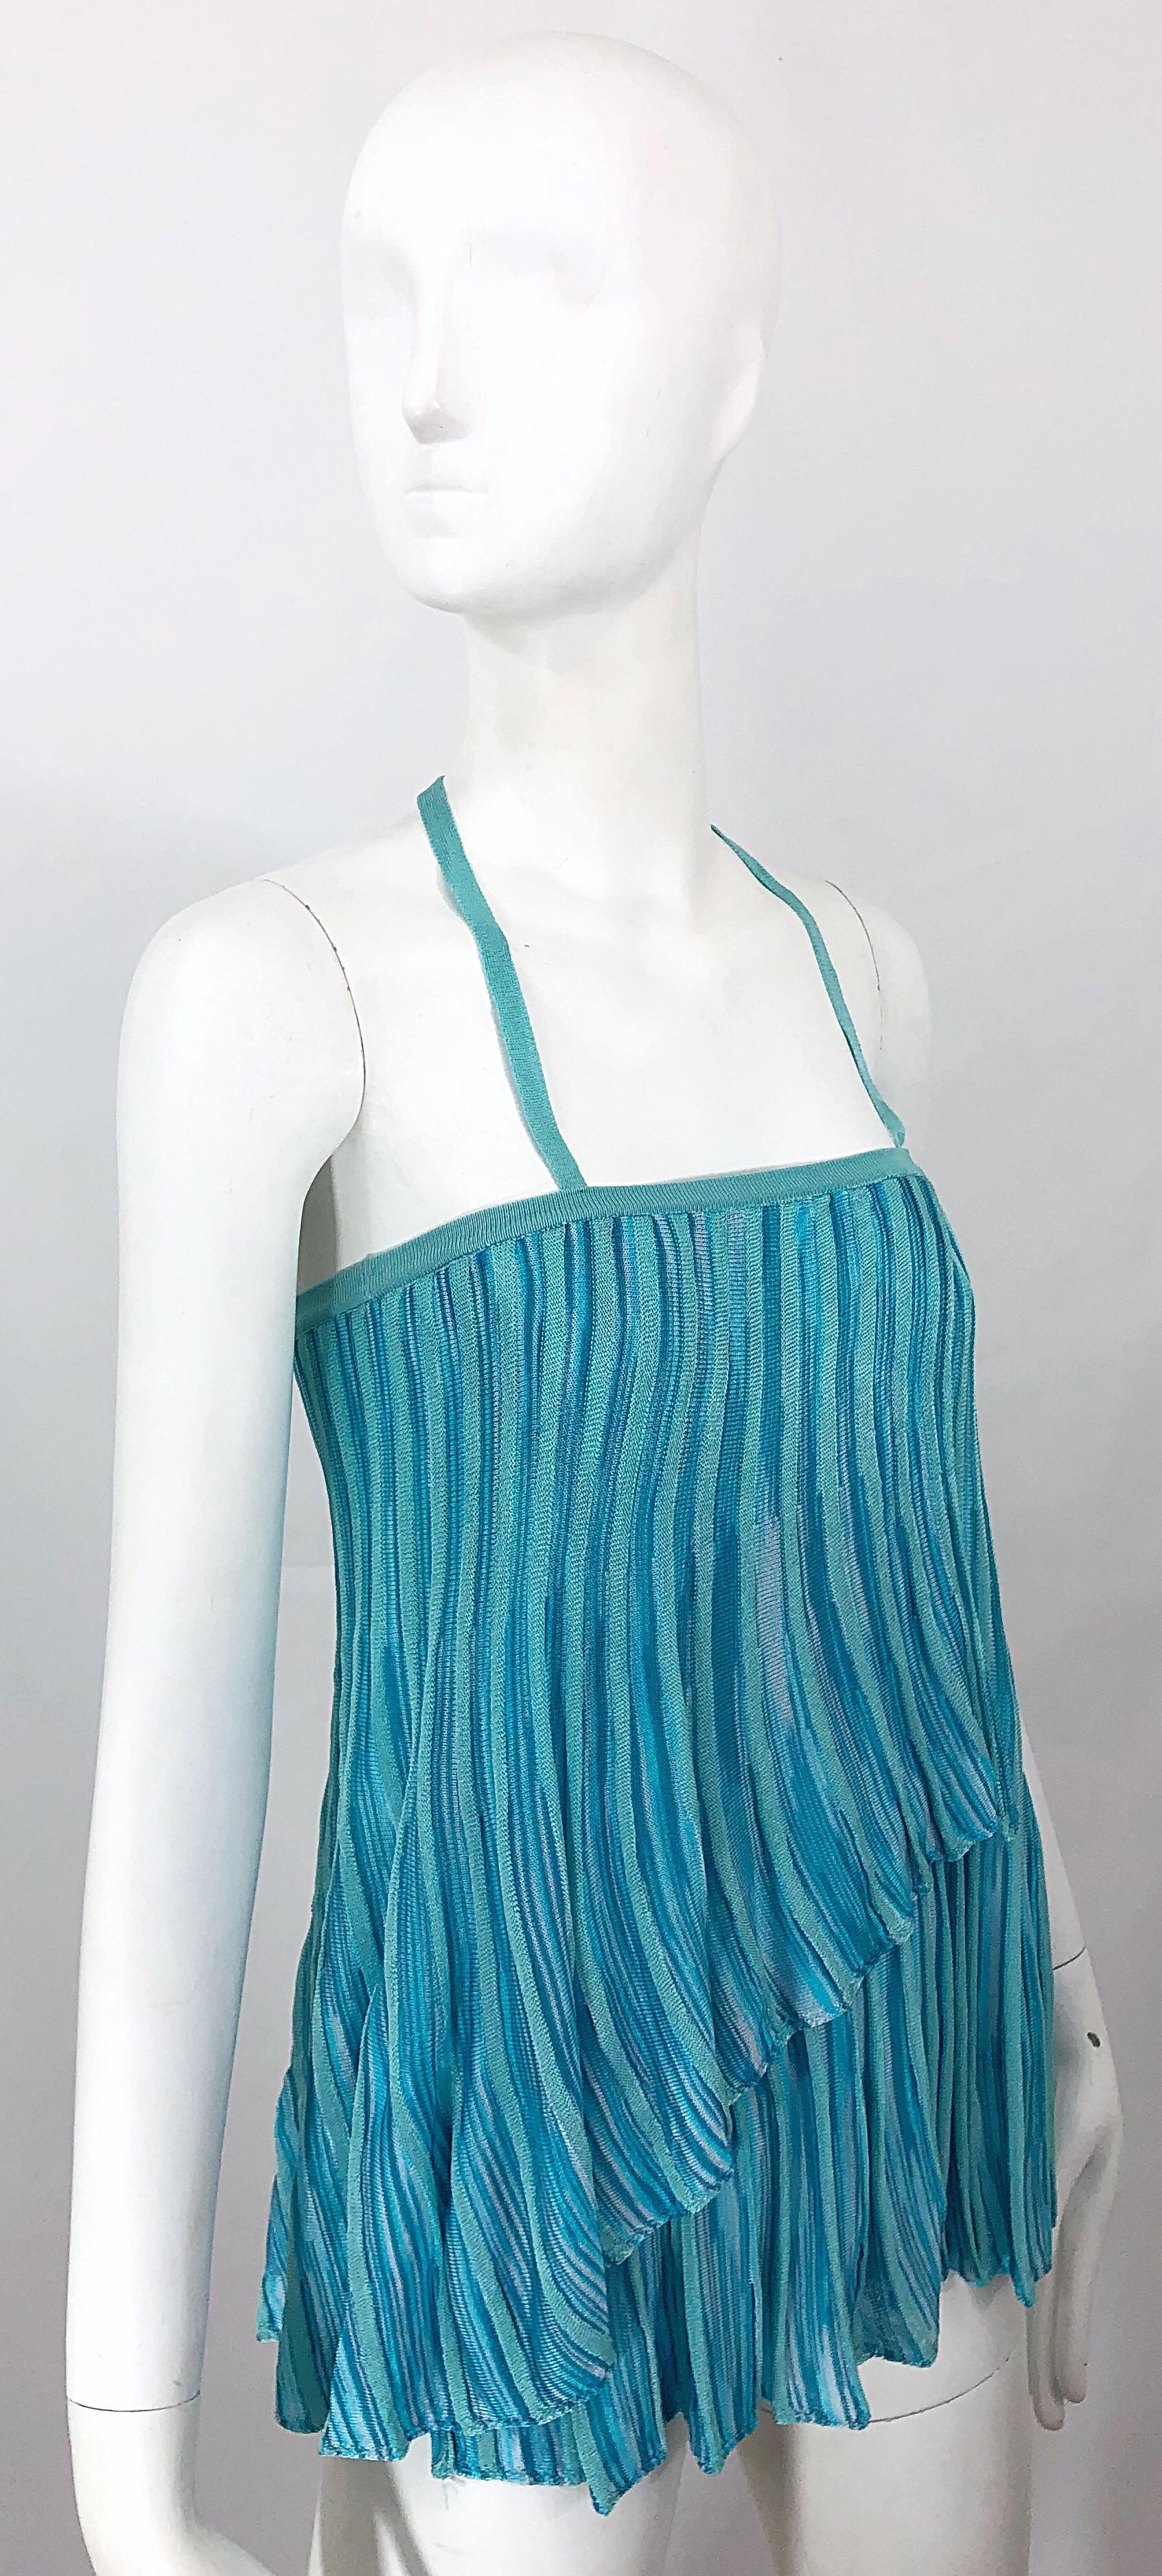 Vintage Missoni 1990s Turquoise Teal Blue Knit Vintage 90s Halter Top OR Skirt For Sale 2